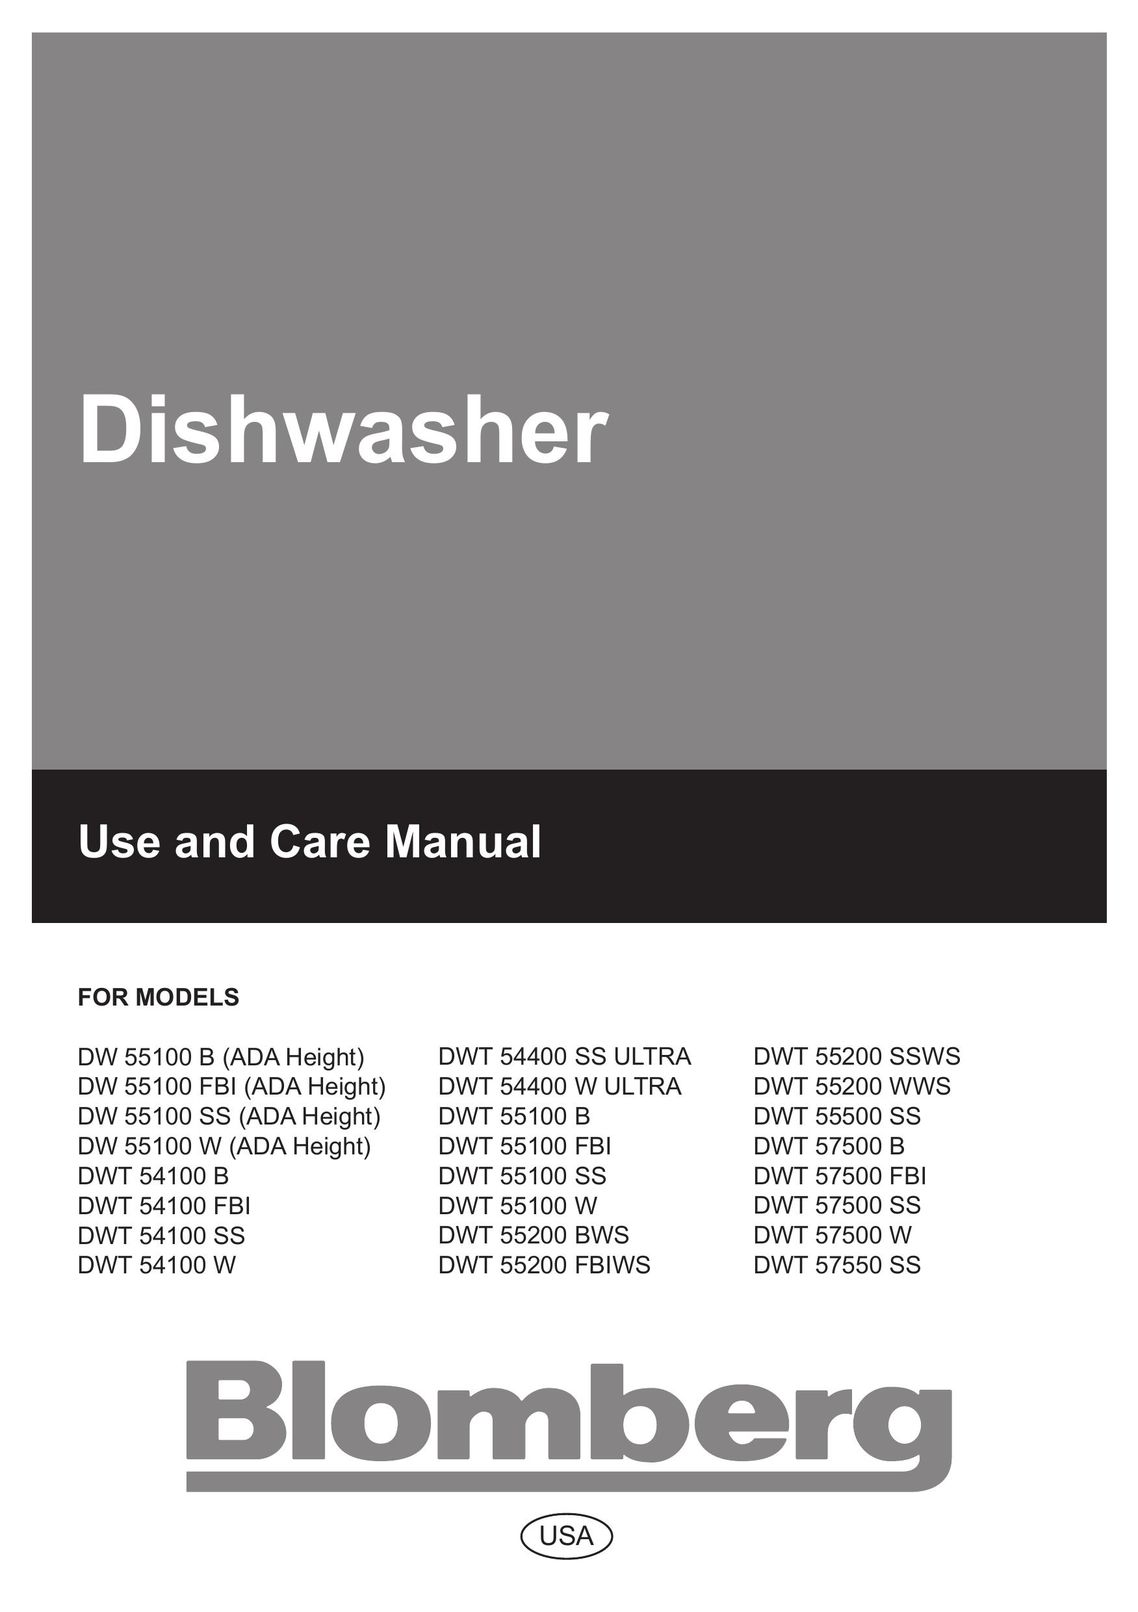 Blomberg DW 55200 FBIWS Dishwasher User Manual